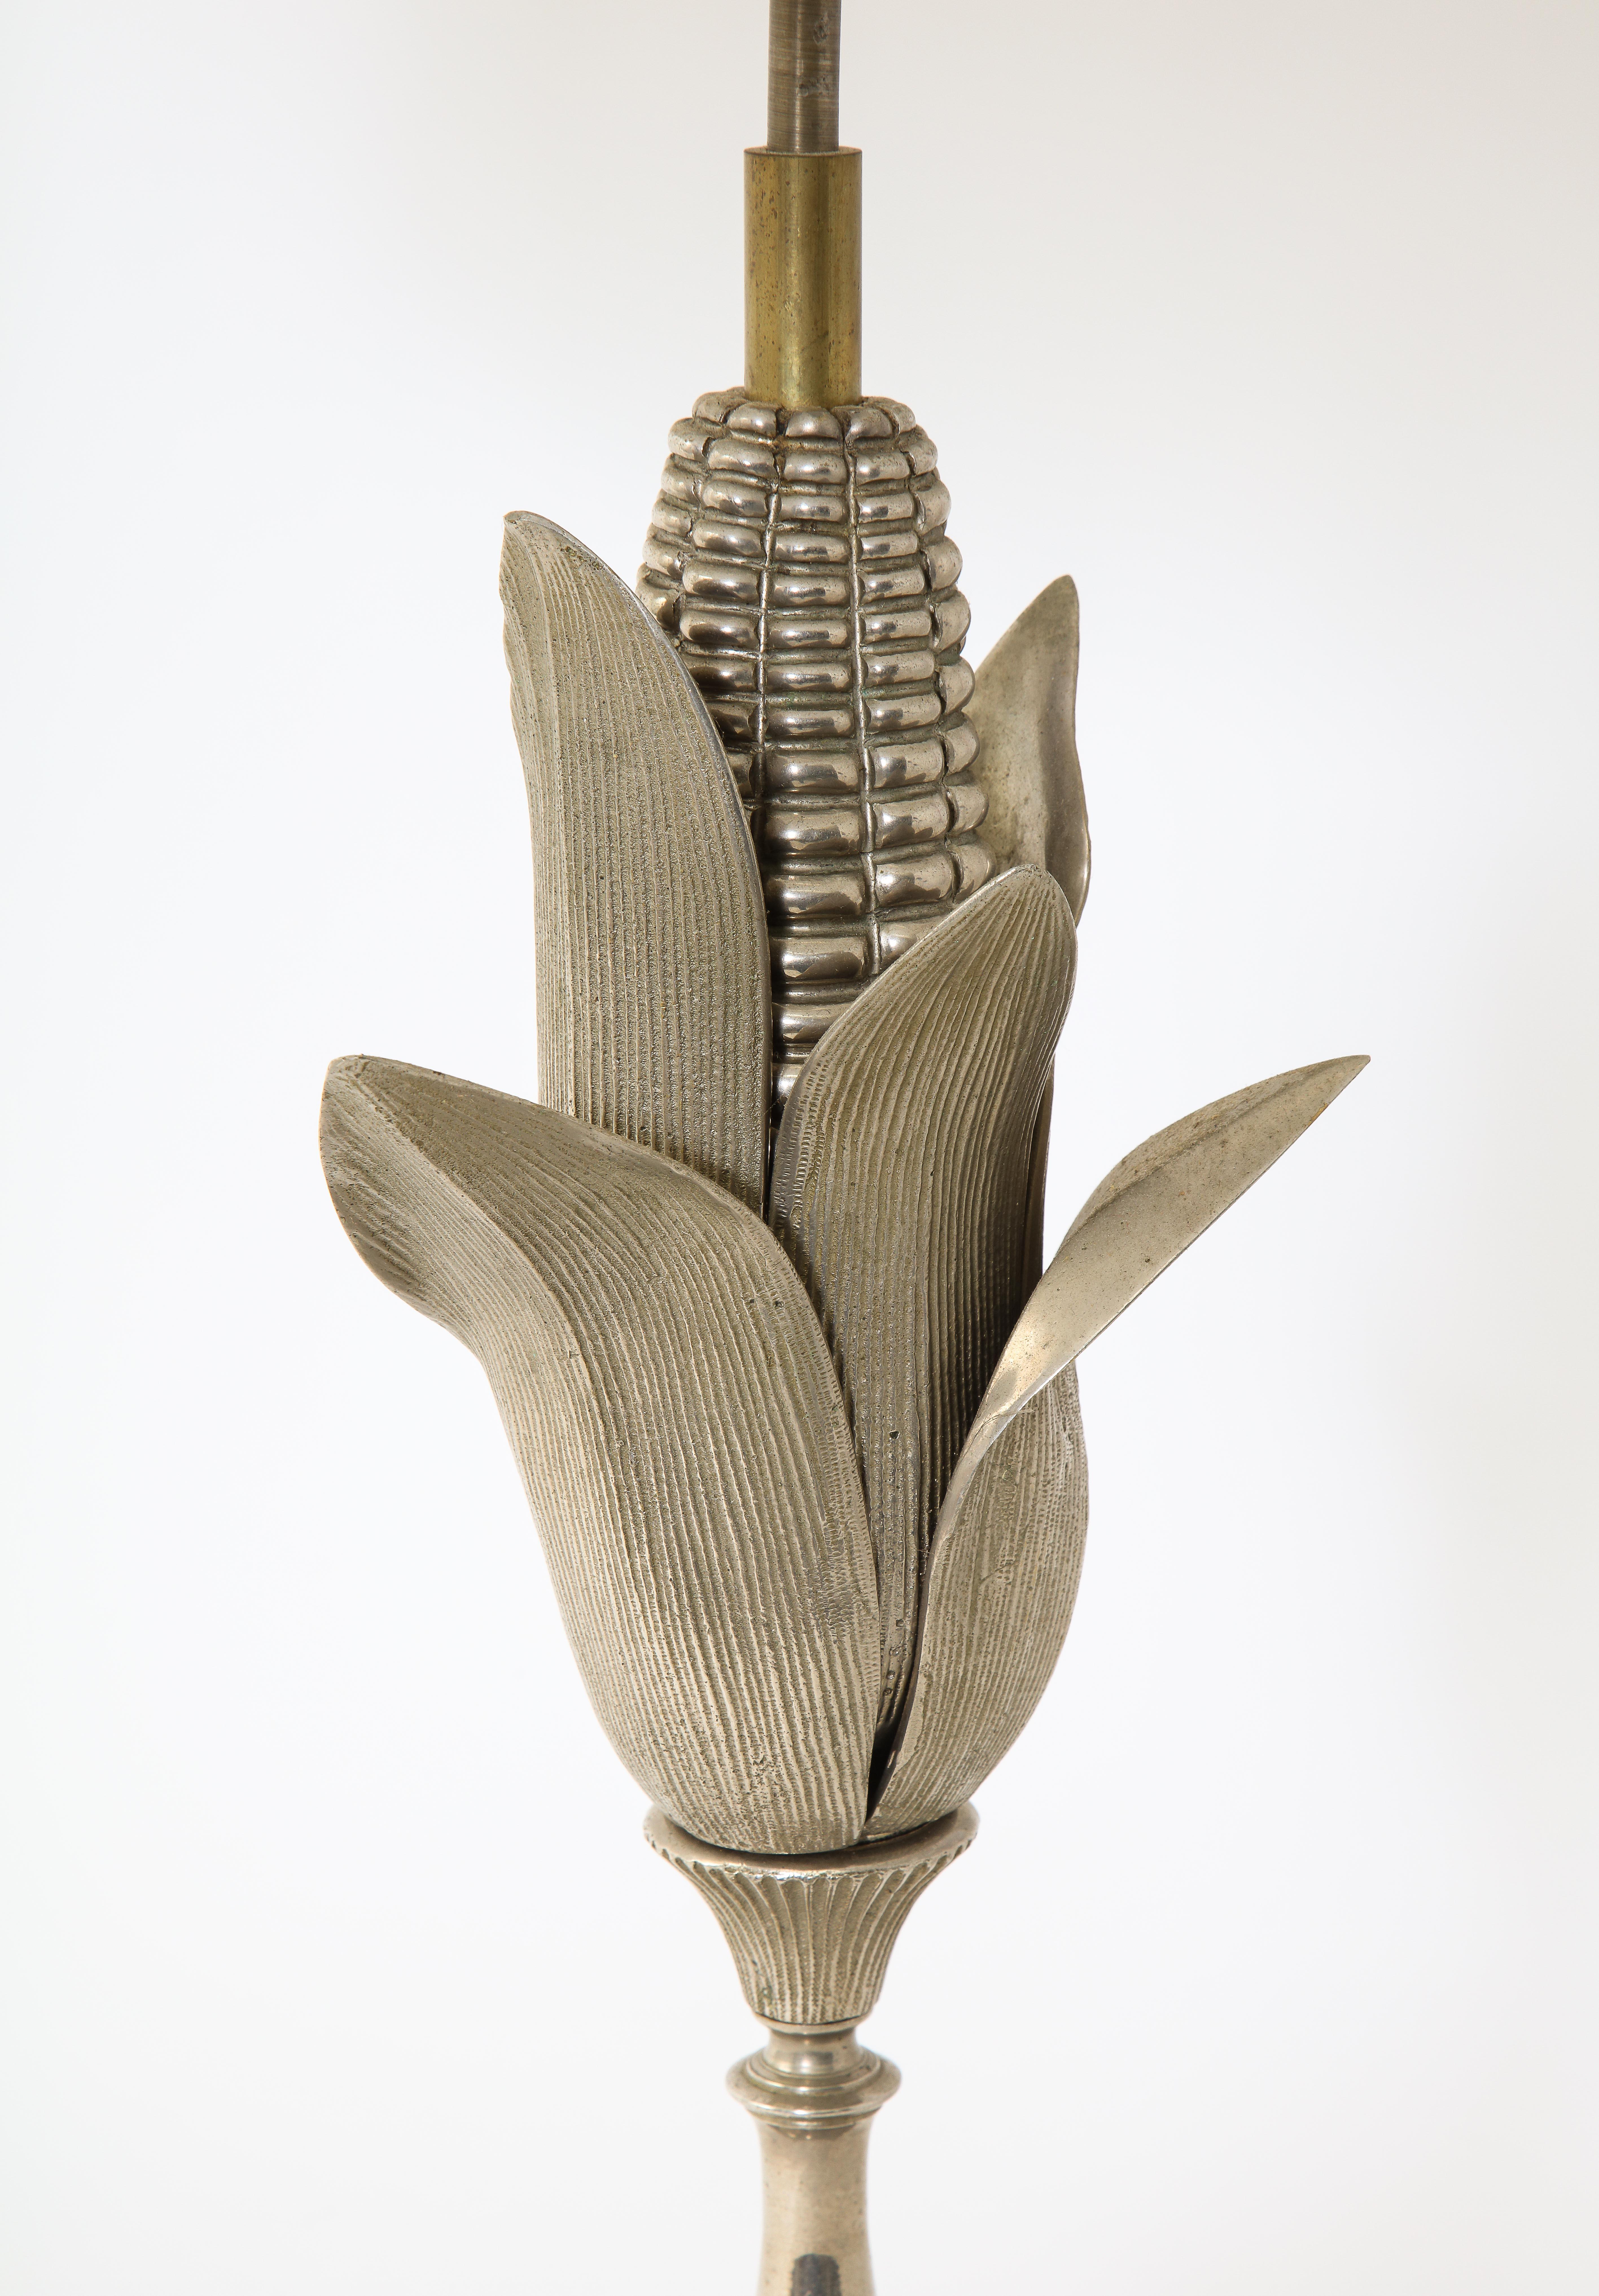 Magnifique lampe à poser à motif de maïs par Maison Charles.

Pièces individuelles en bronze moulé et plaqué, patinées dans des tons riches. Recâblé. 

L'abat-jour n'est pas inclus.